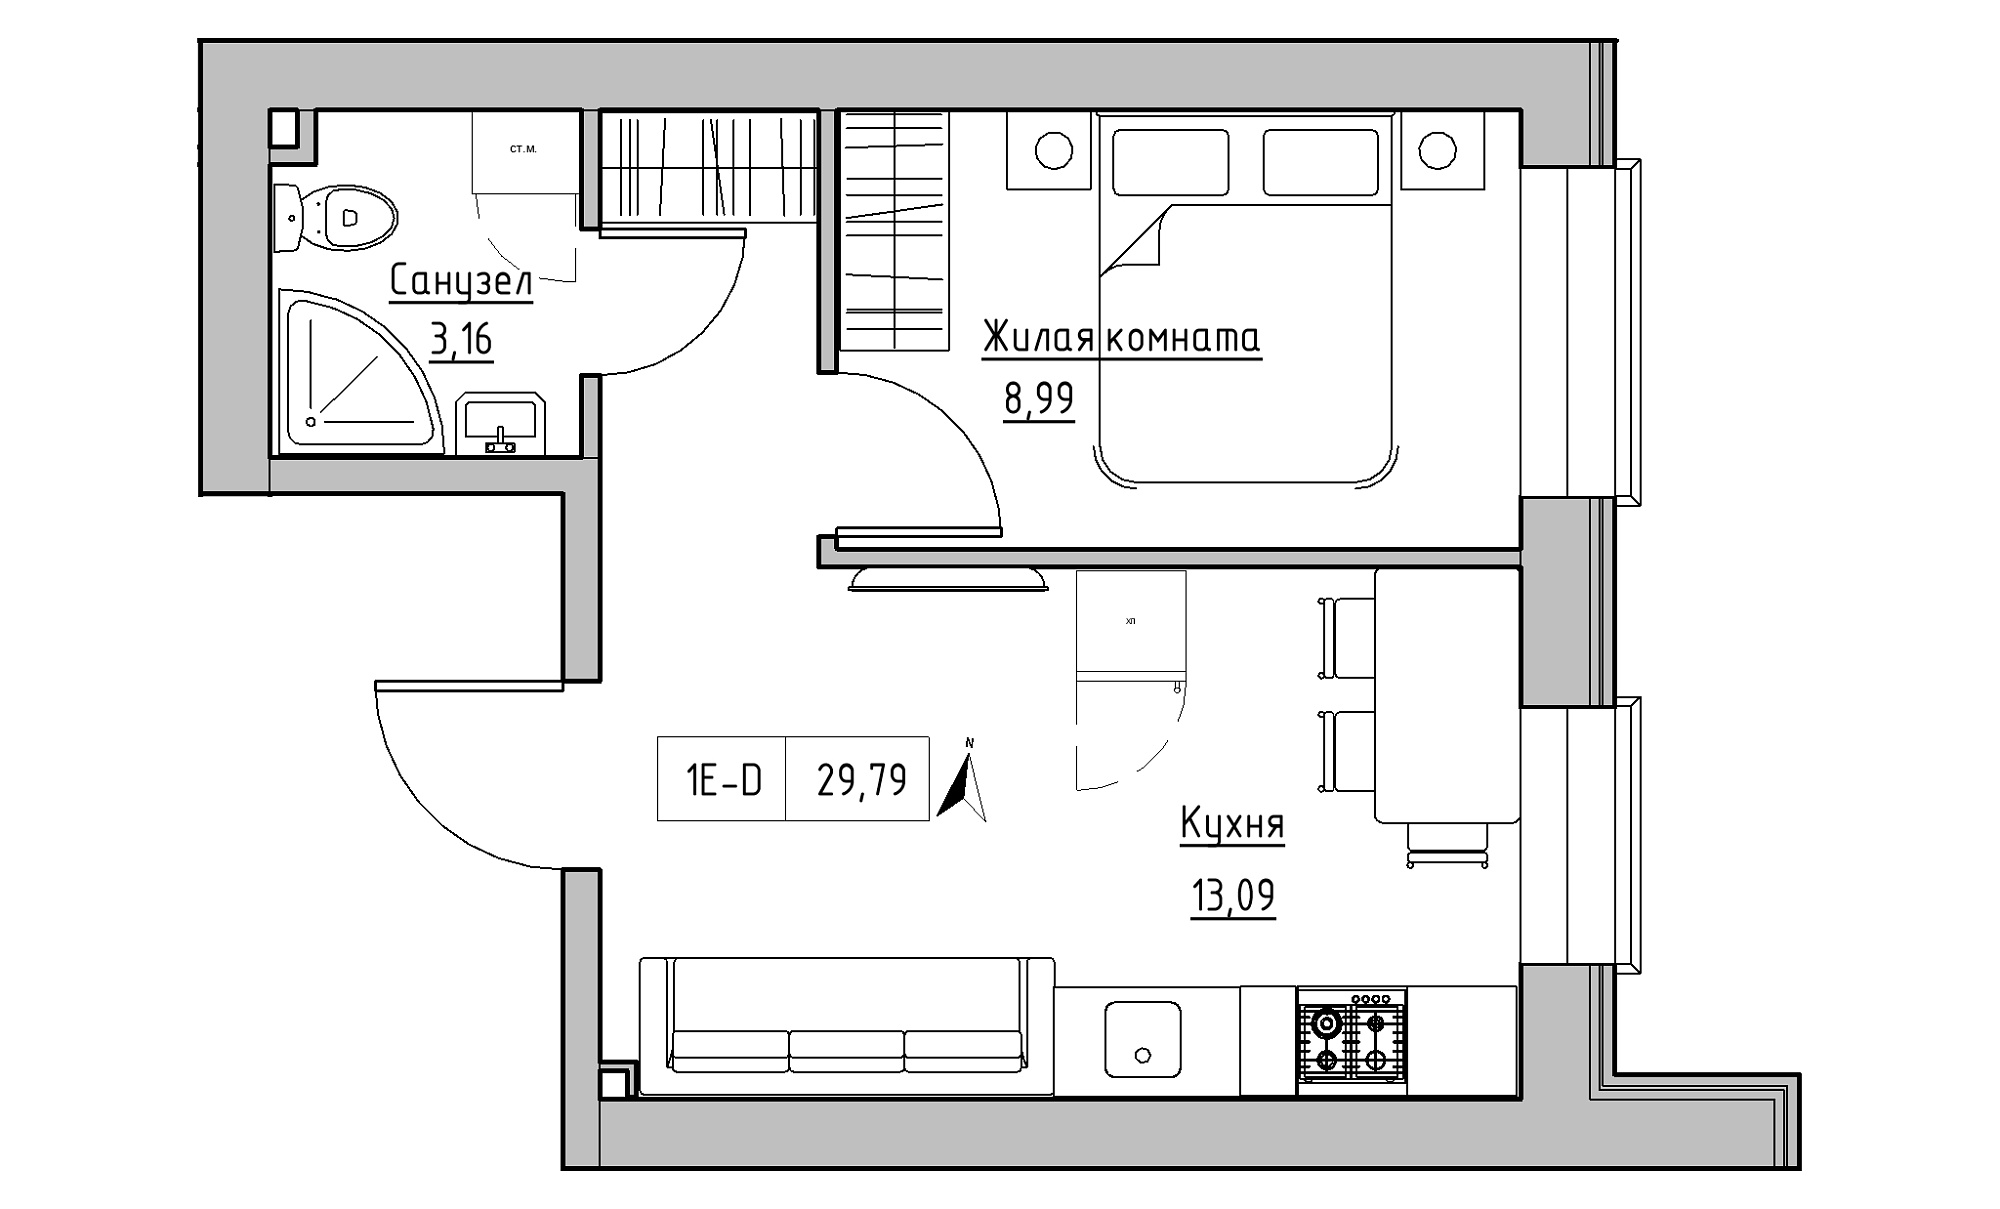 Планировка 1-к квартира площей 29.79м2, KS-016-01/0013.